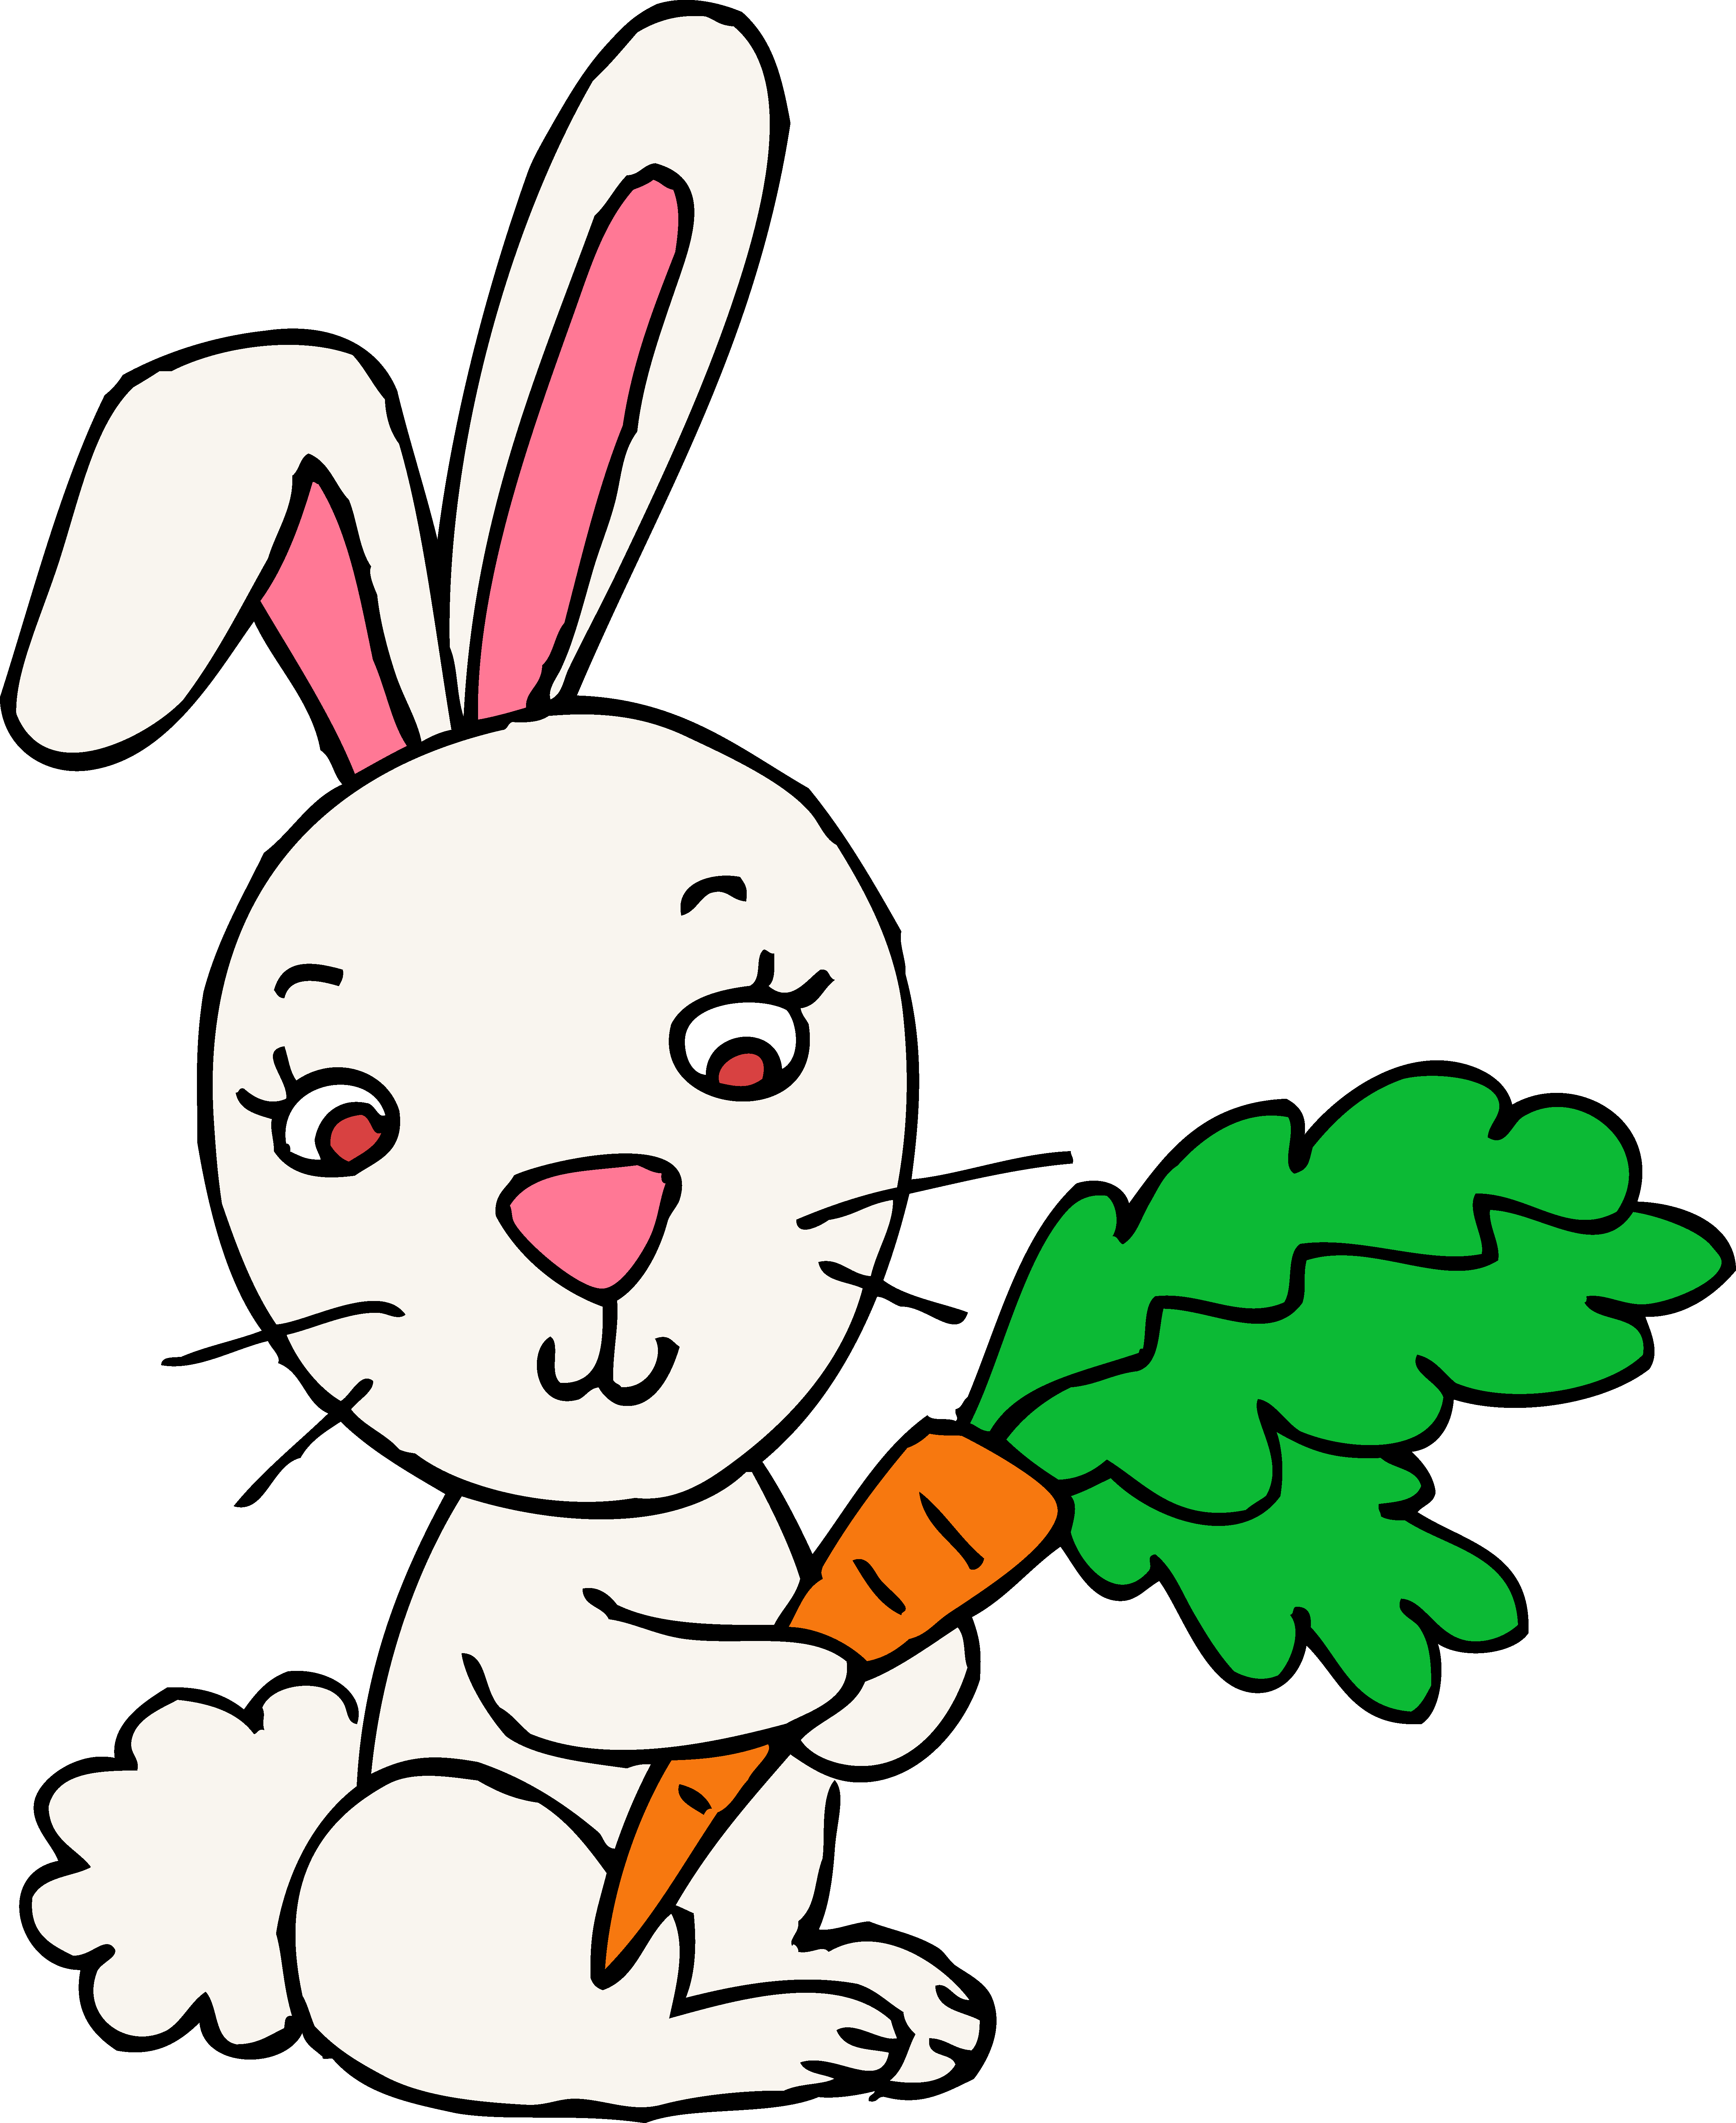 Moving bunny clip art cartoon bunny rabbits clip art images 3 ...